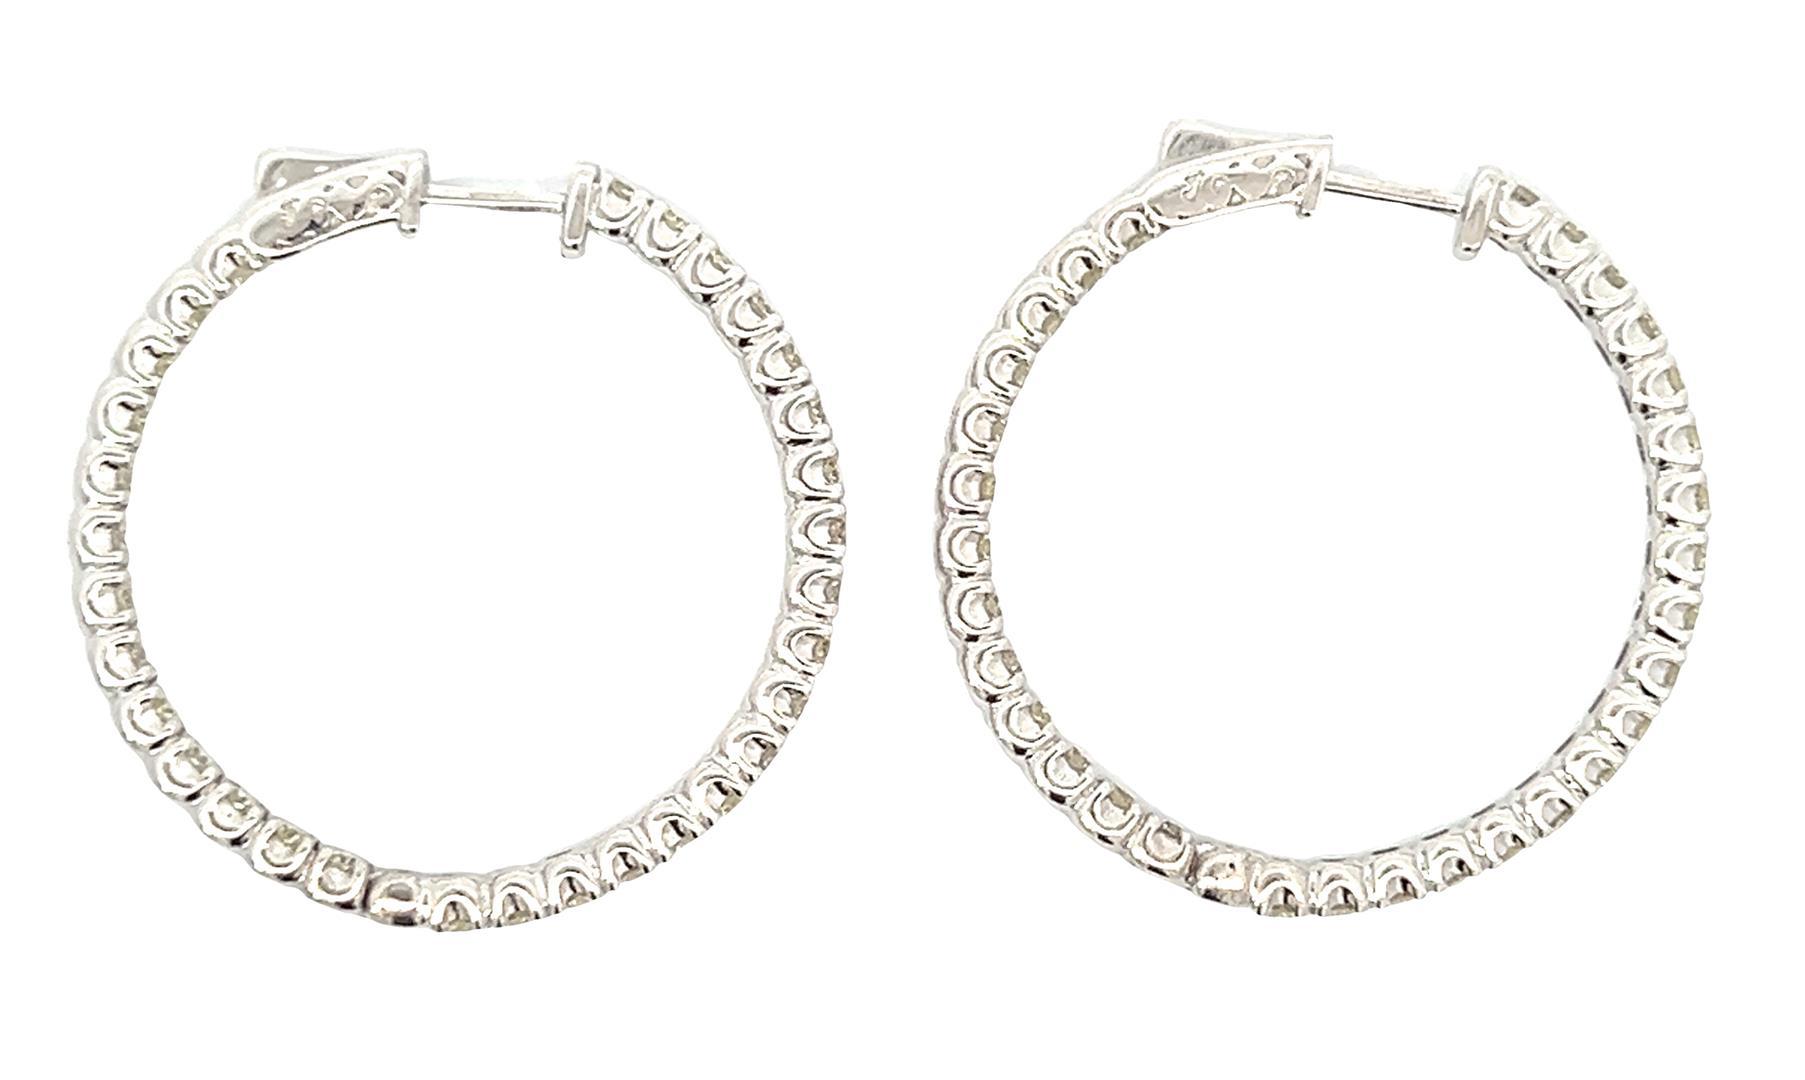 4.15 ctw Diamond Hoop Earrings - 14KT White Gold